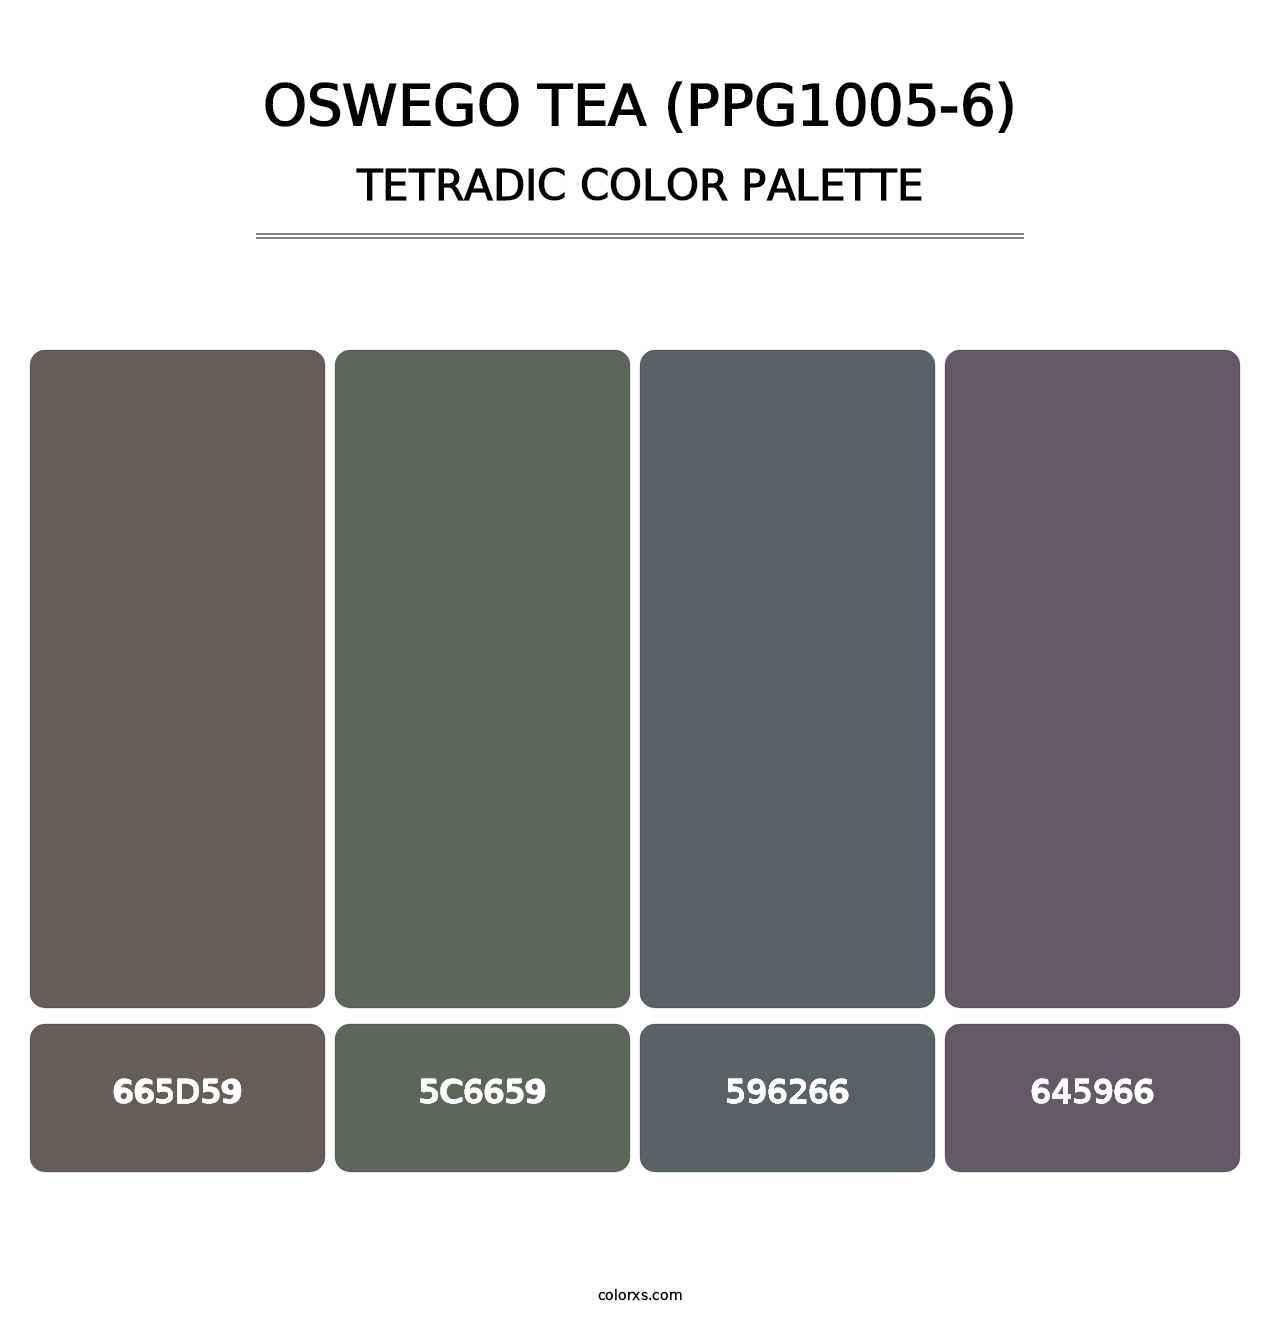 Oswego Tea (PPG1005-6) - Tetradic Color Palette